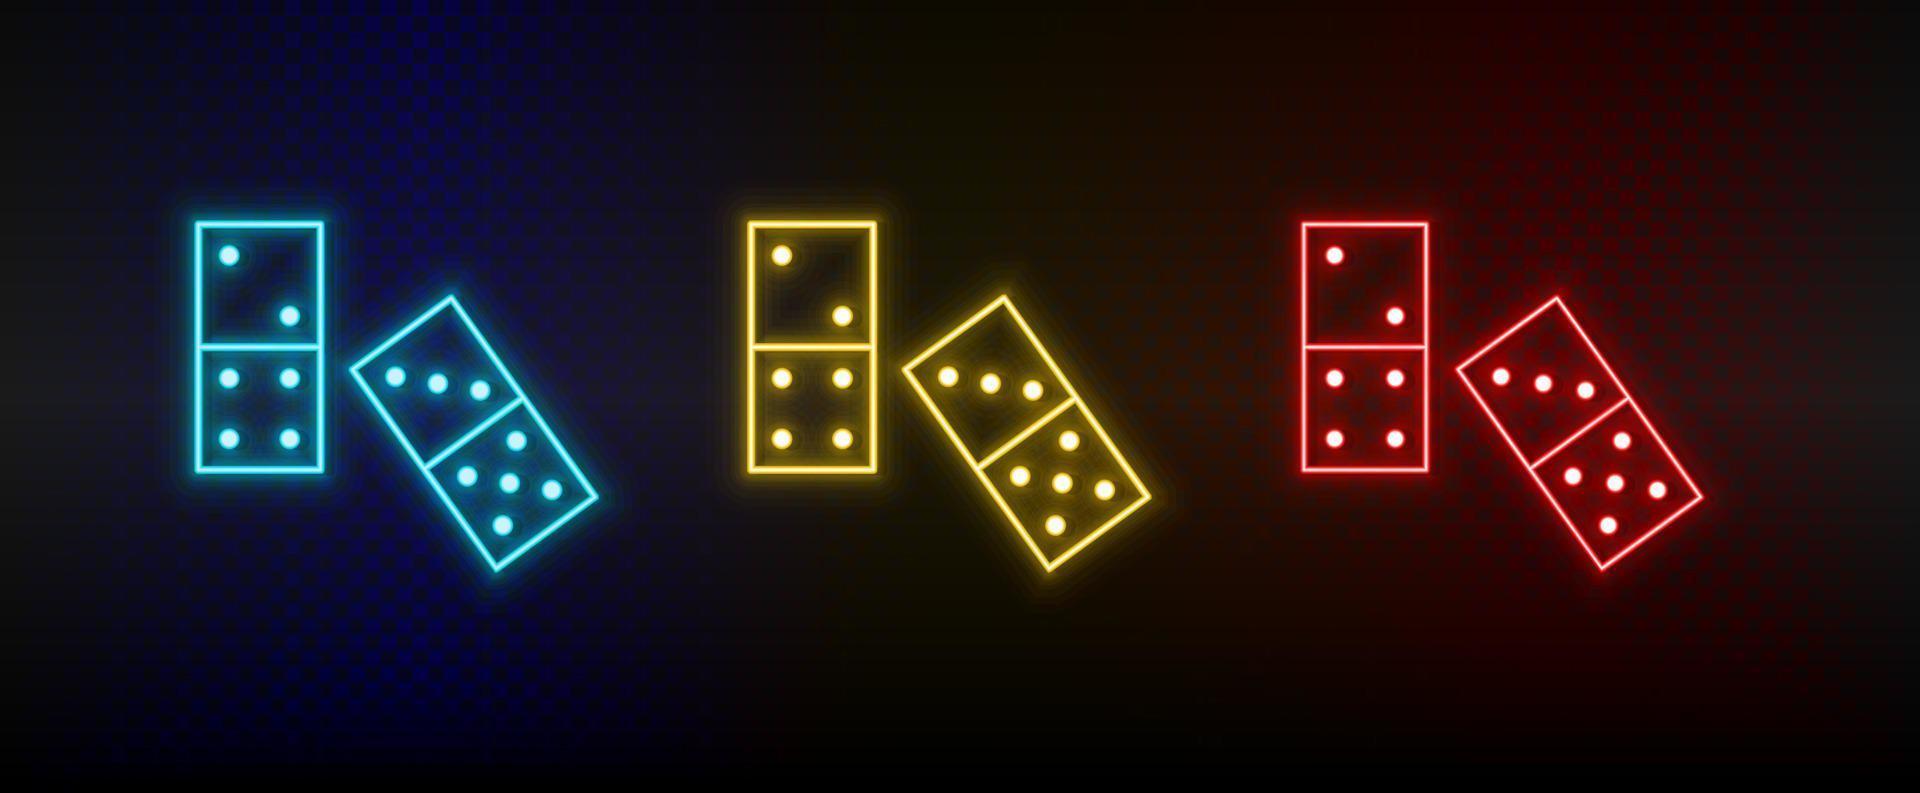 iconos de neón. juego de dominó retro. conjunto de icono de vector de neón rojo, azul, amarillo sobre fondo oscuro